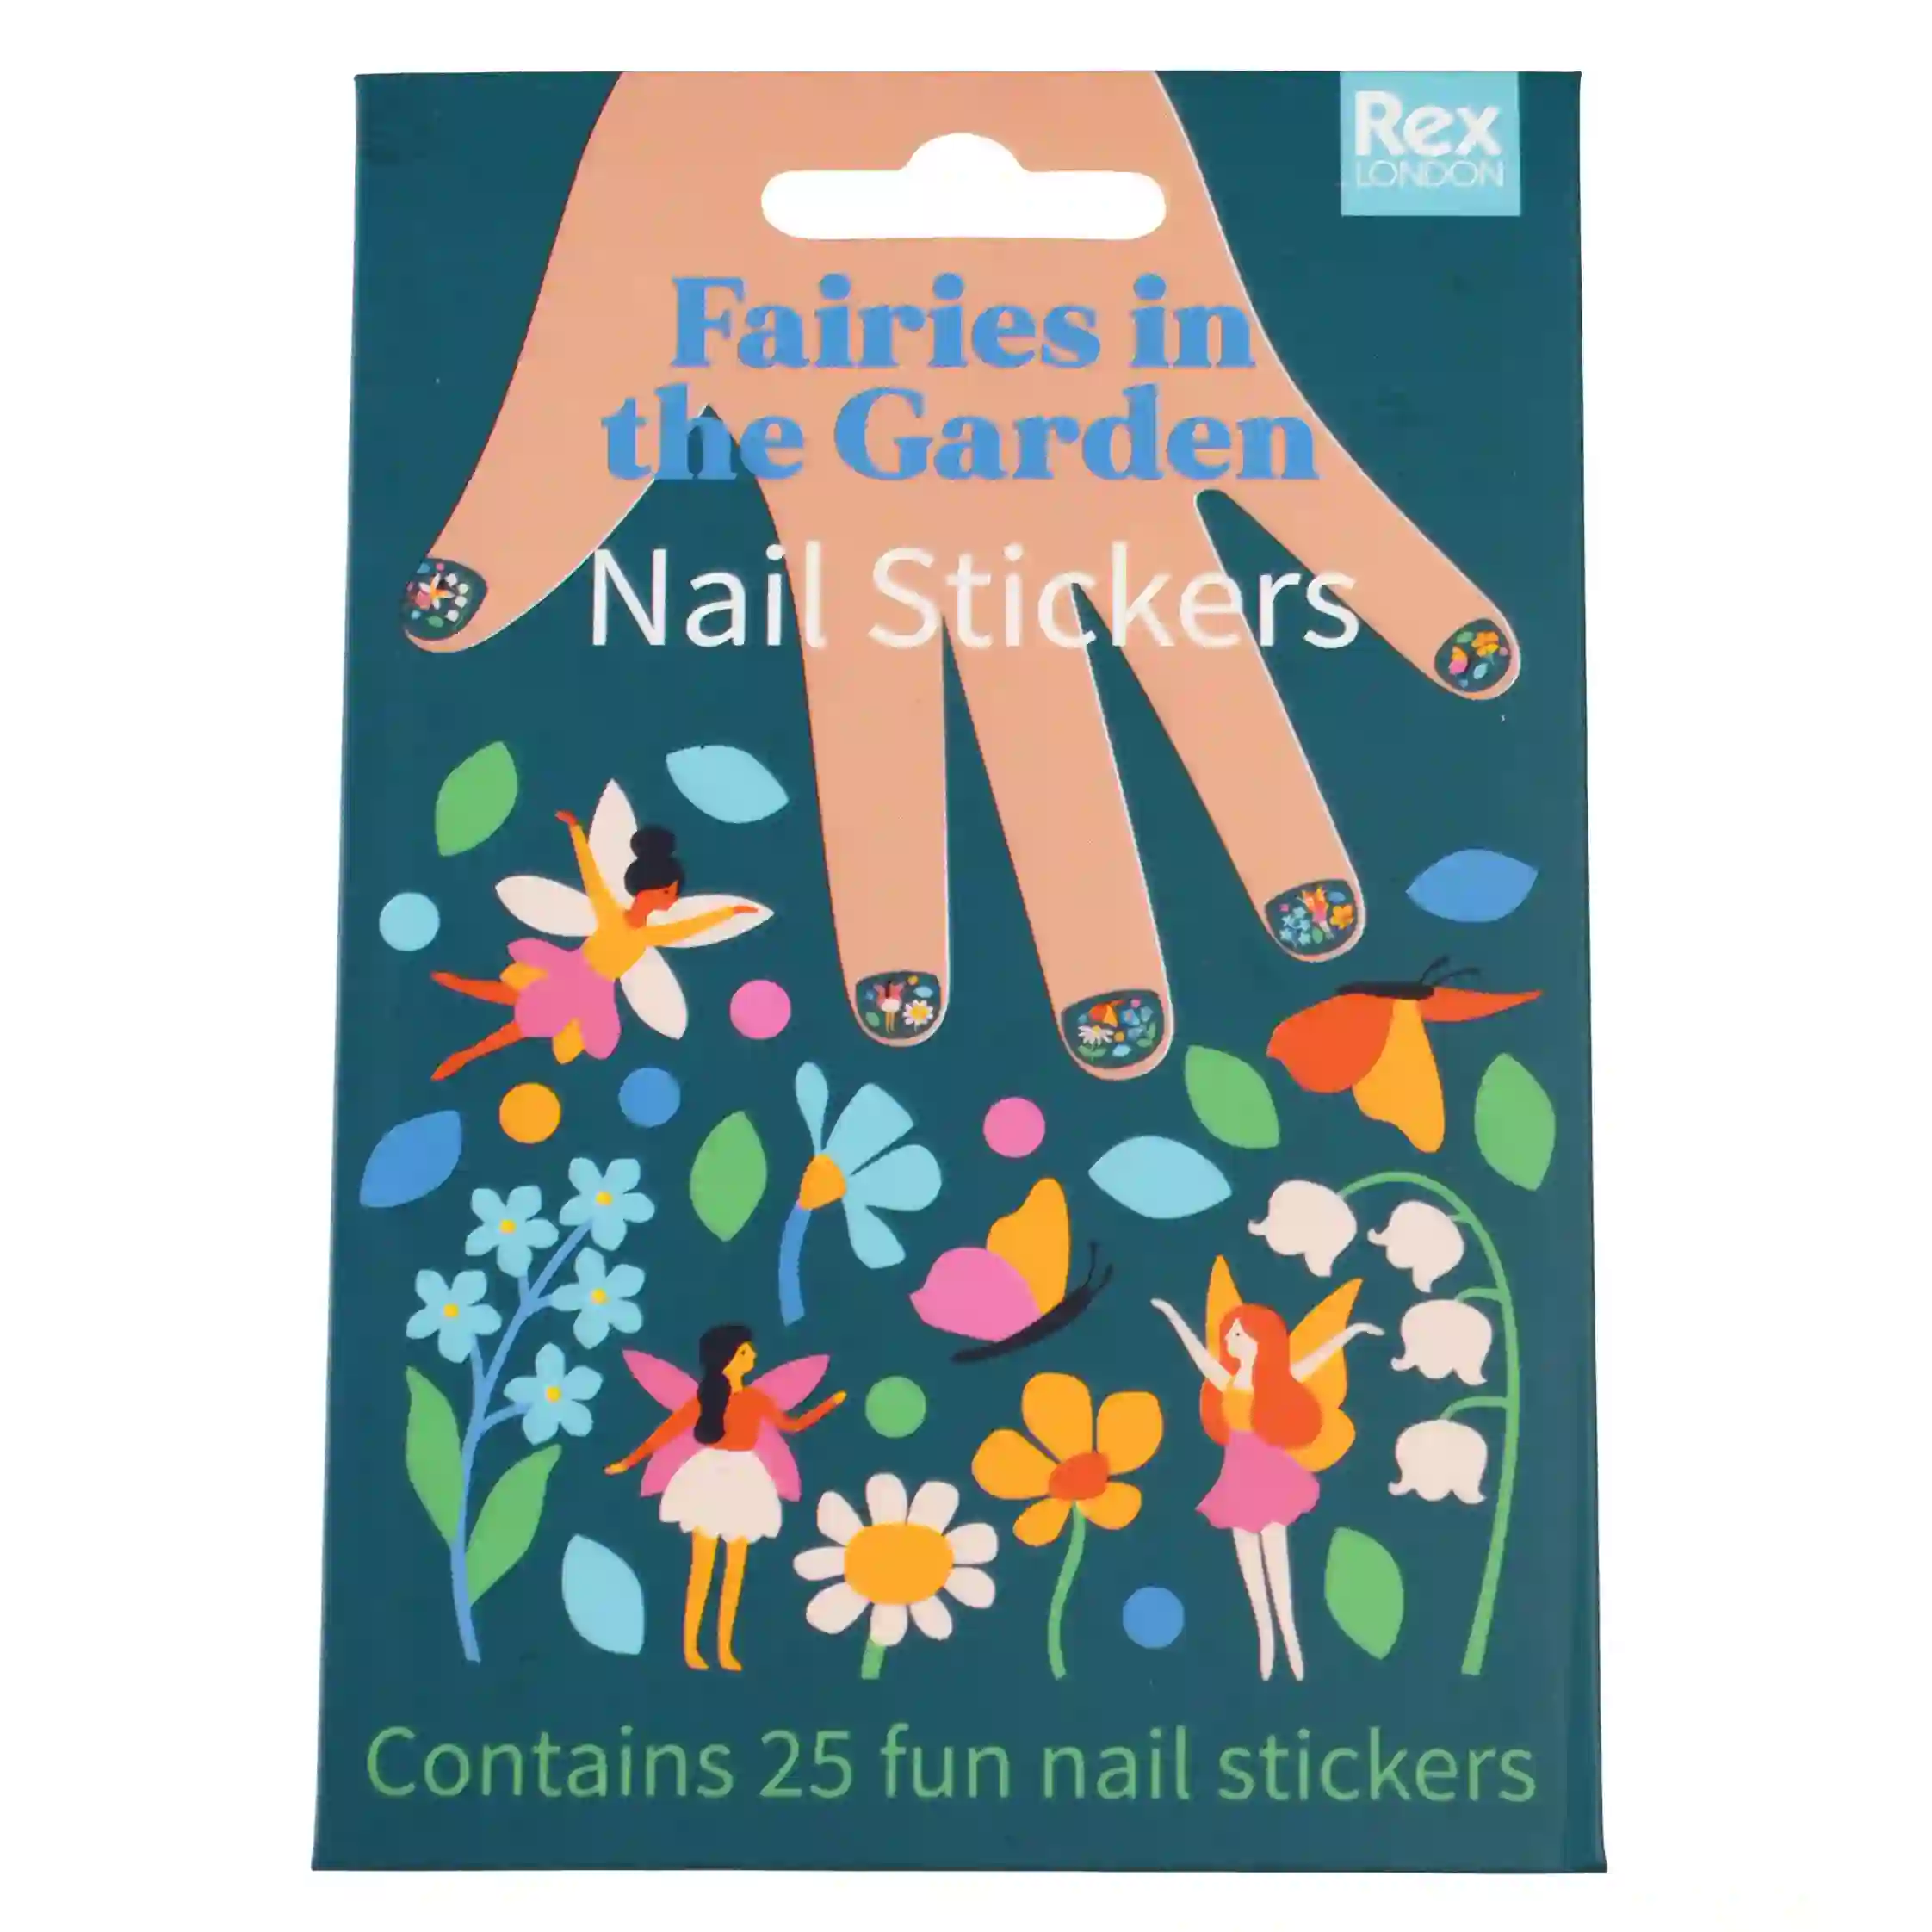 children's nail stickers - fairies in the garden